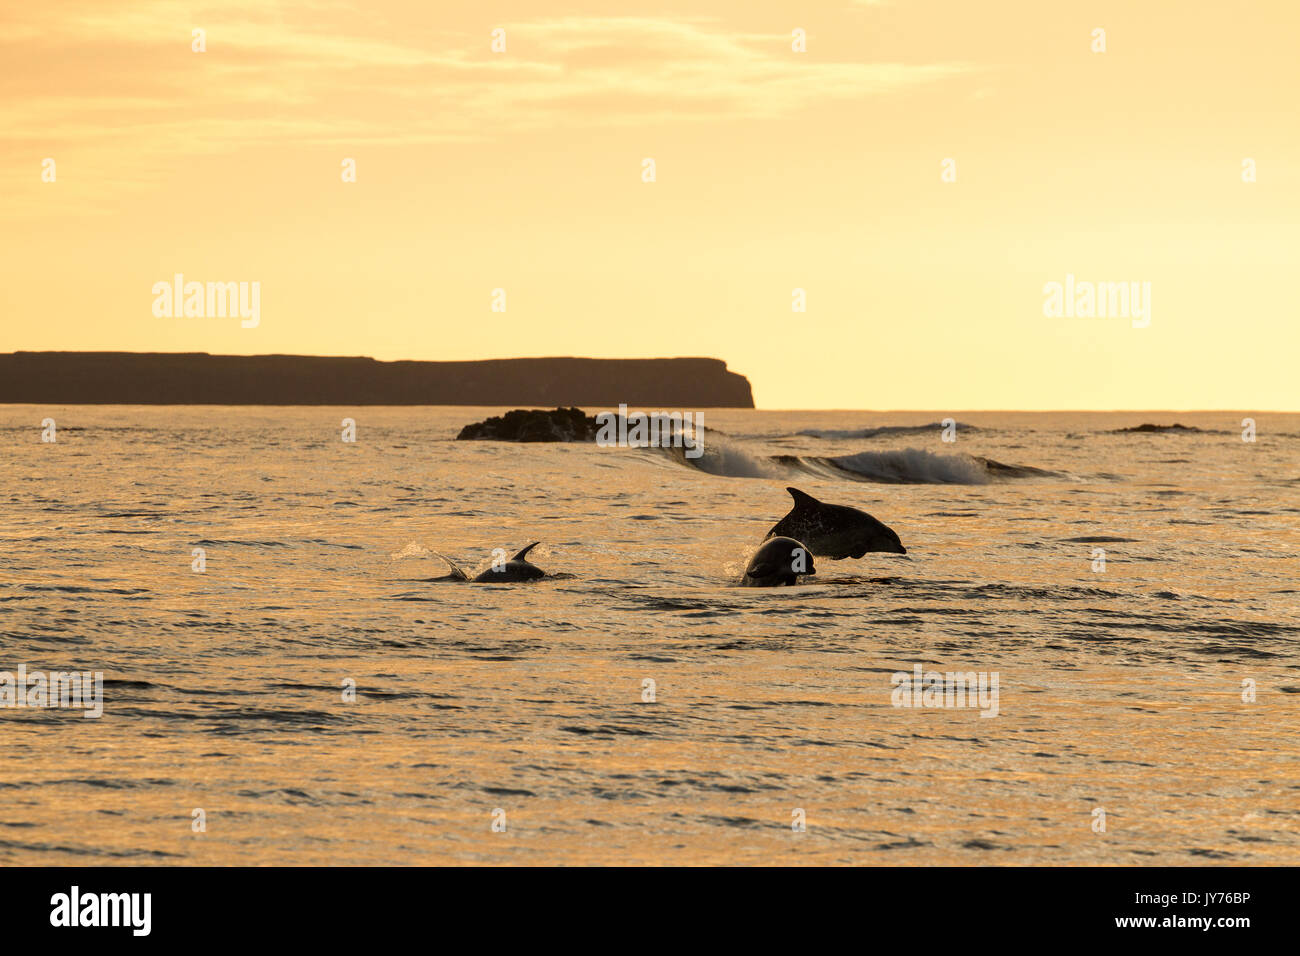 Dauphins sautant hors de la surf au coucher du soleil près de l'île de Staffa, sur la côte ouest de l'Ecosse Banque D'Images